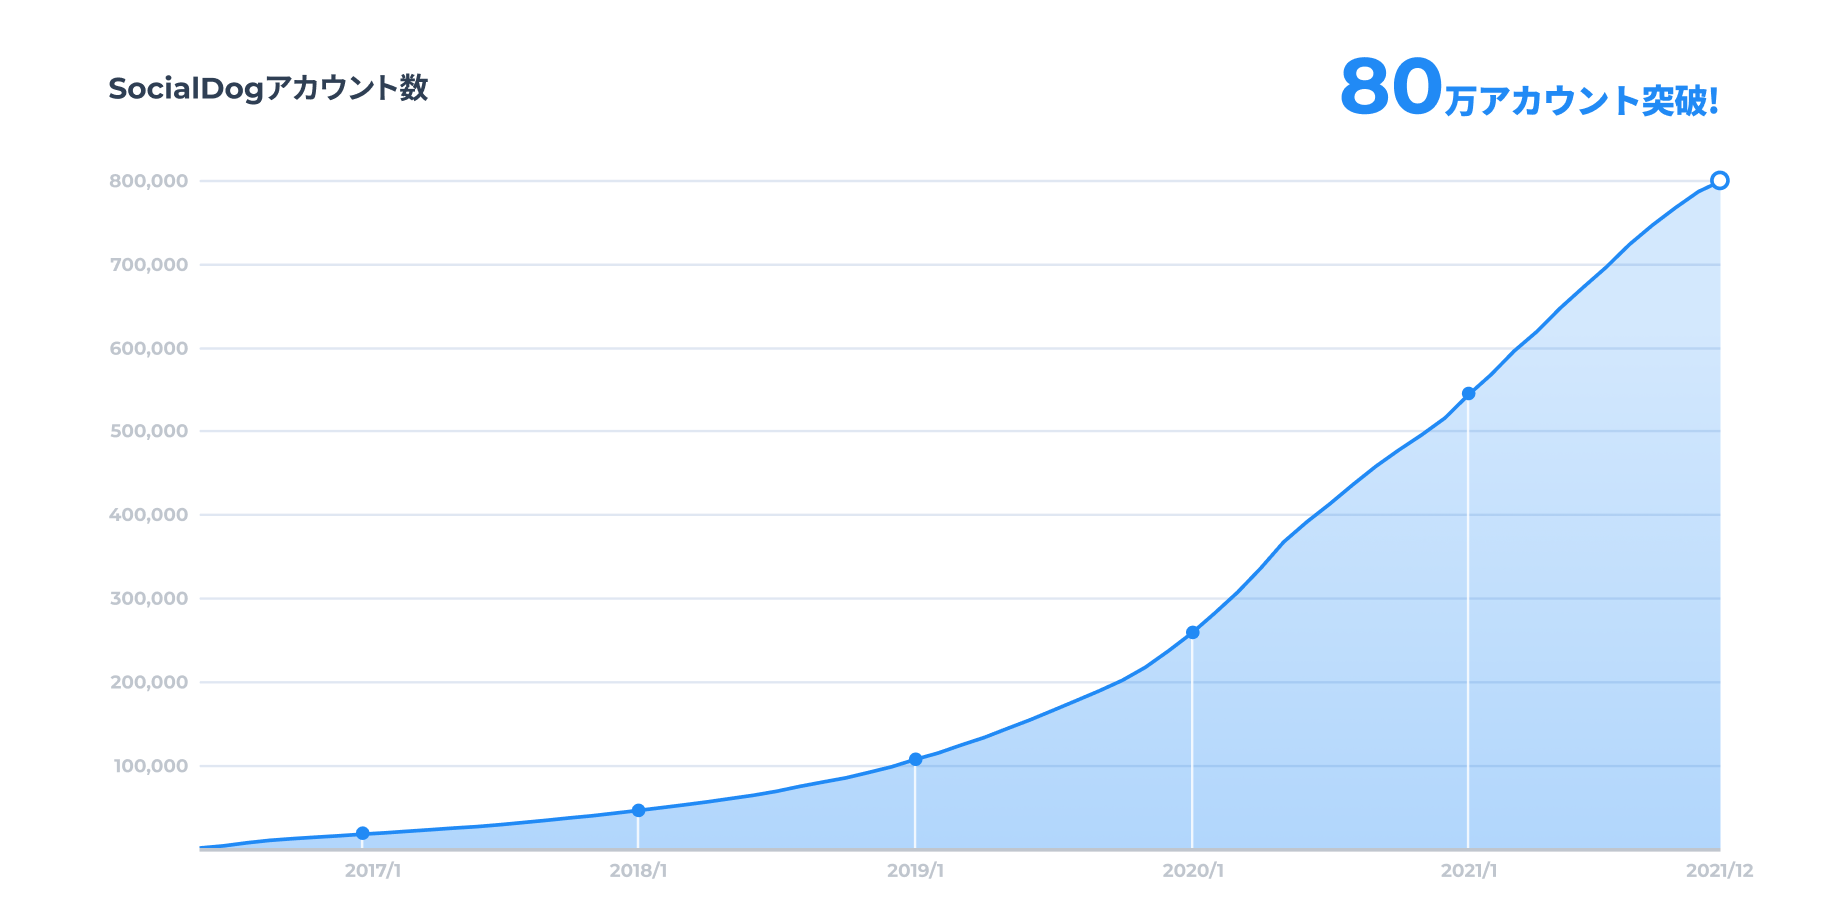 SocialDog アカウント数の推移(グラフ)